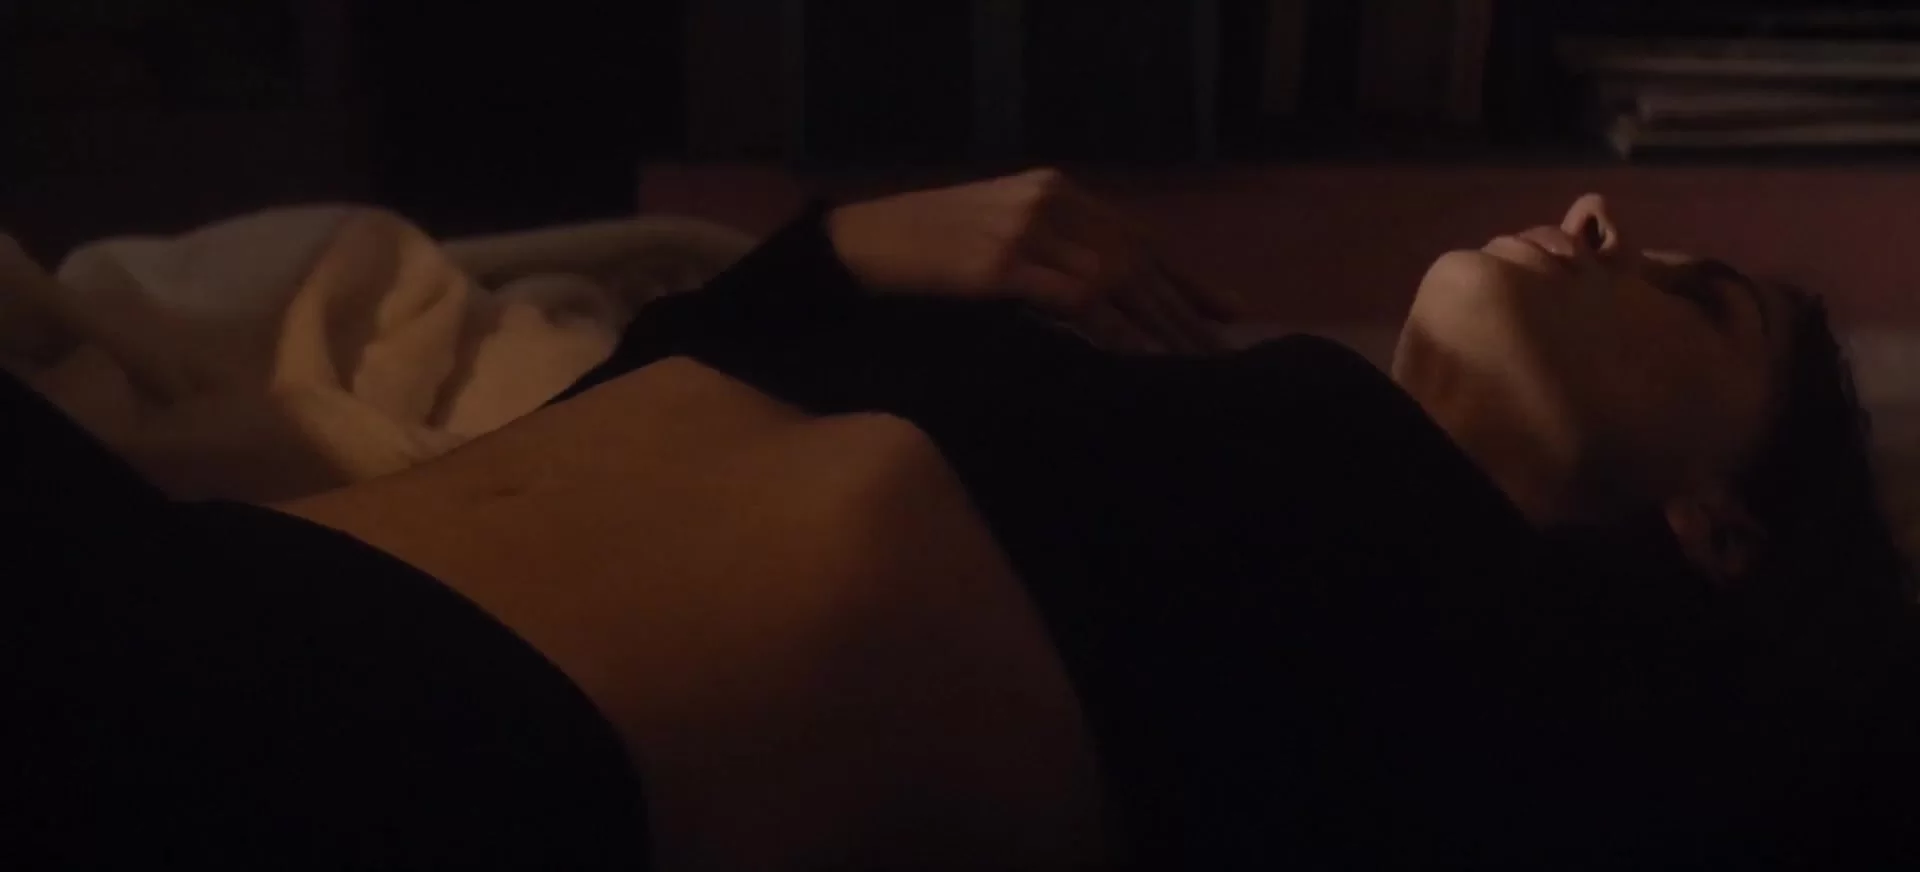 Housewife - Masturbation Scenes in Movies erotic sex scenes image